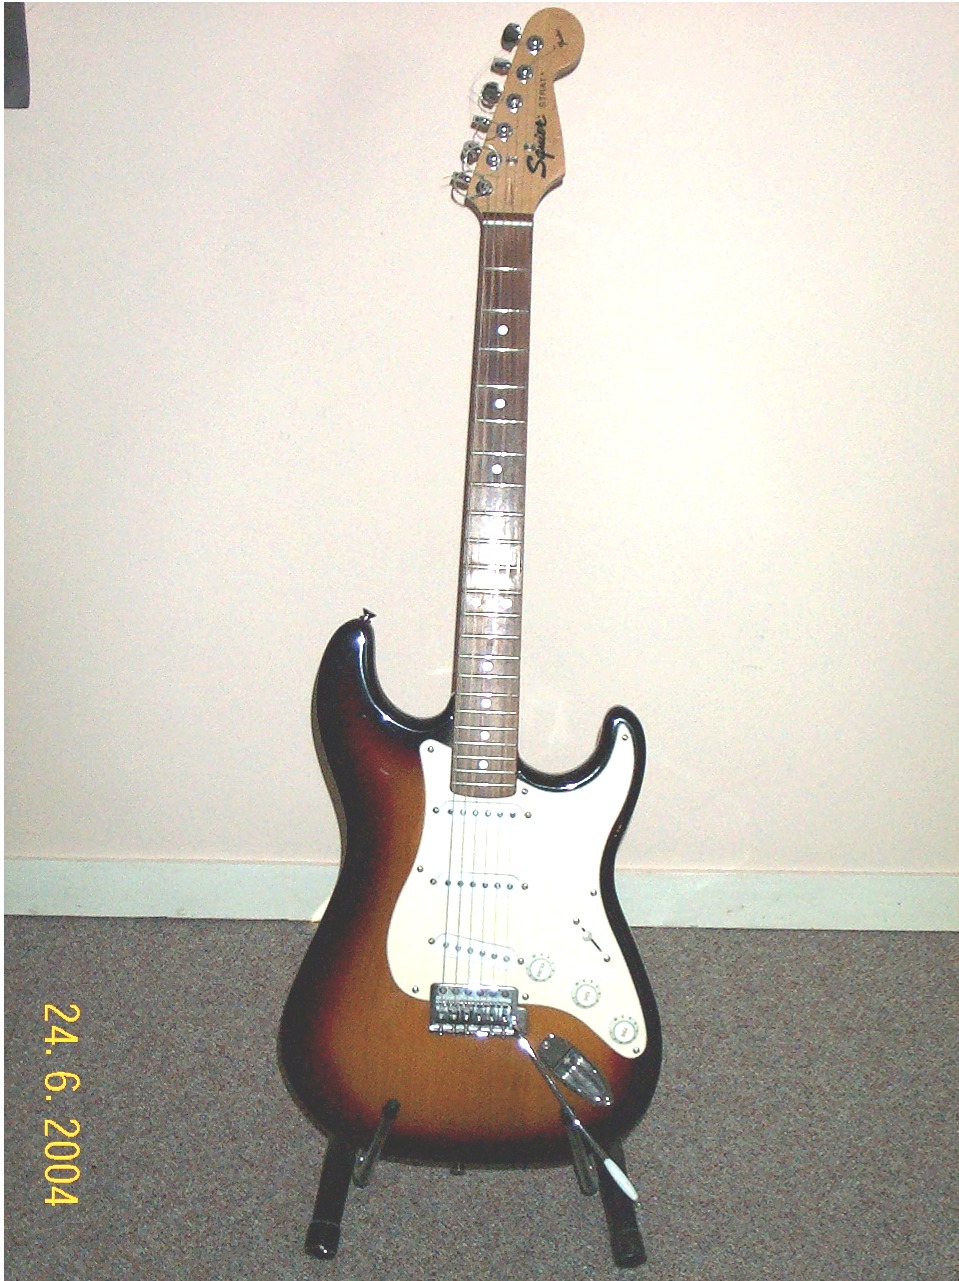 Fender Squier Stratocaster - loading